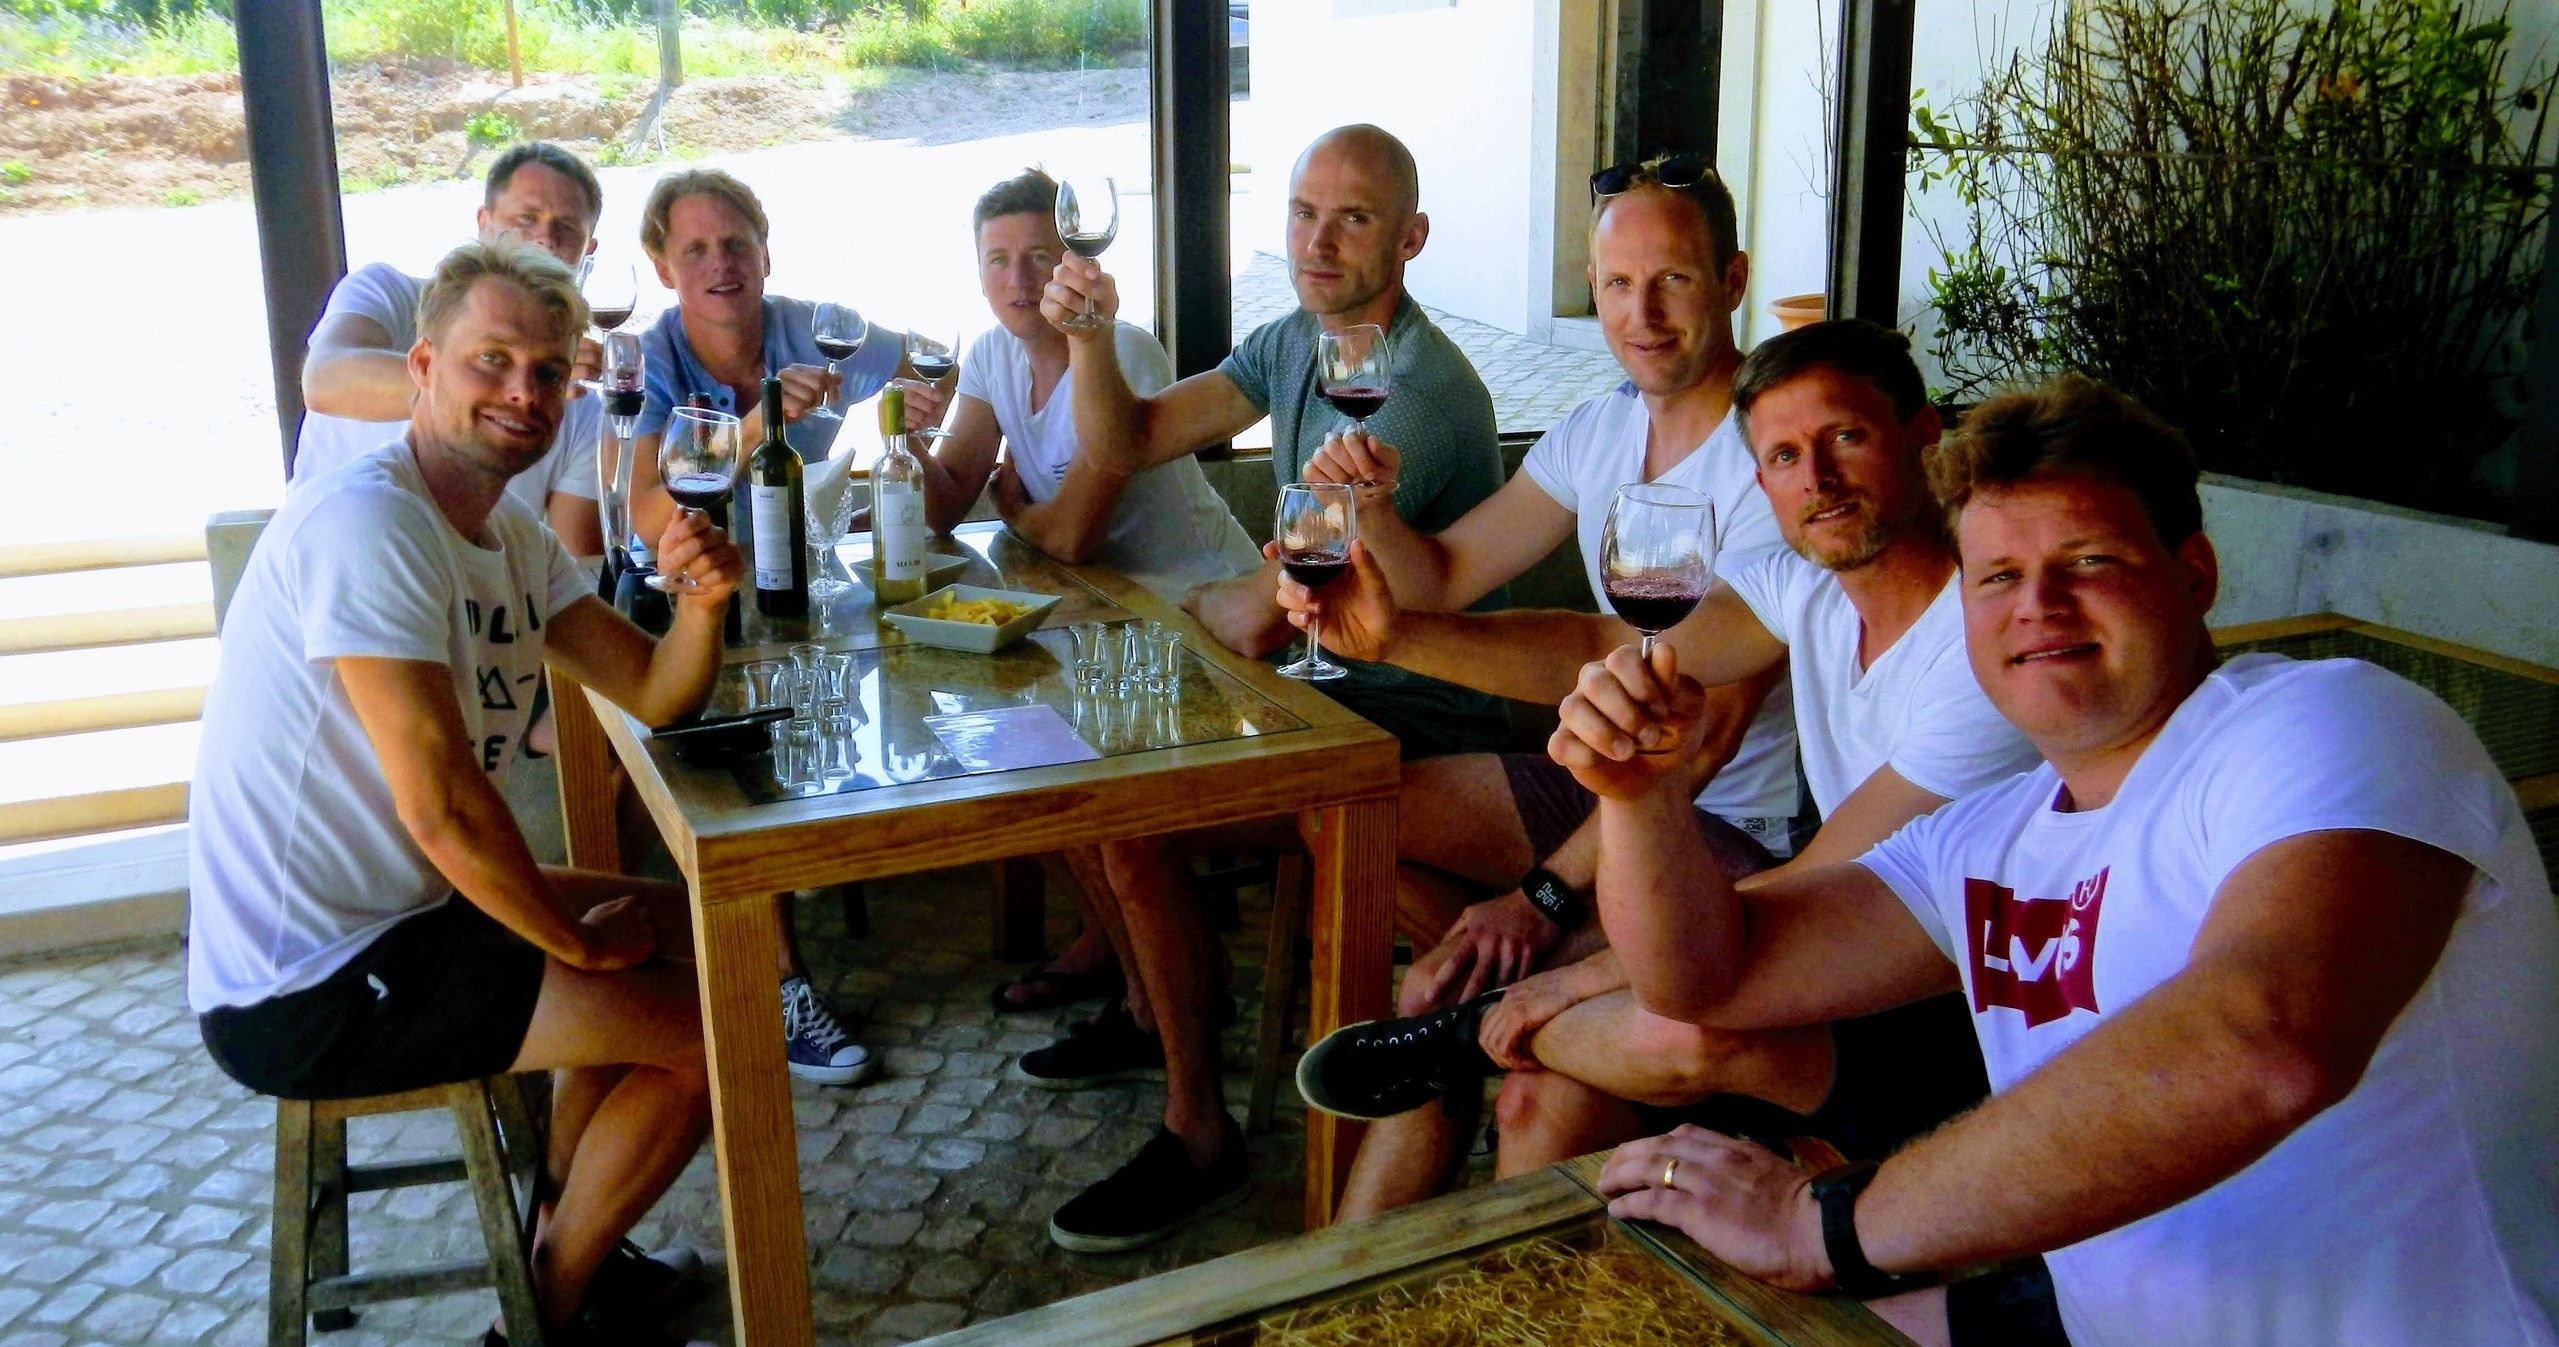 Snorkeling & Wine Experience in Arrábida